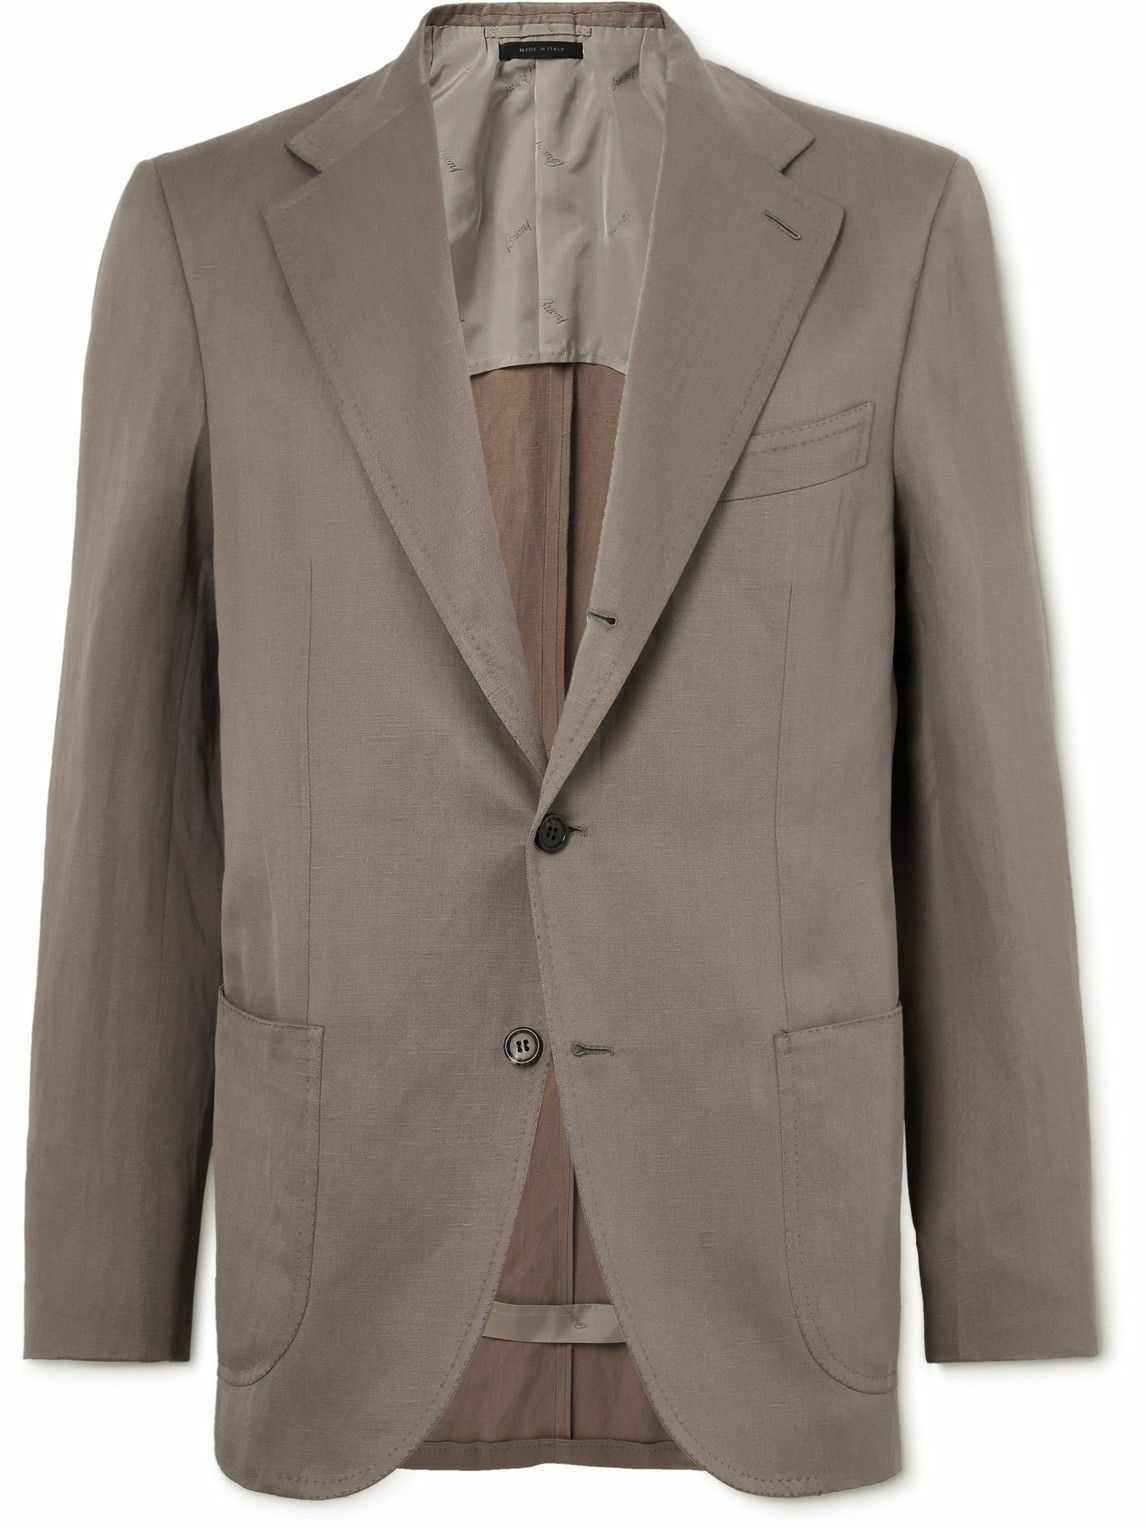 Brioni - Silk and Linen-Blend Suit Jacket - Neutrals Brioni